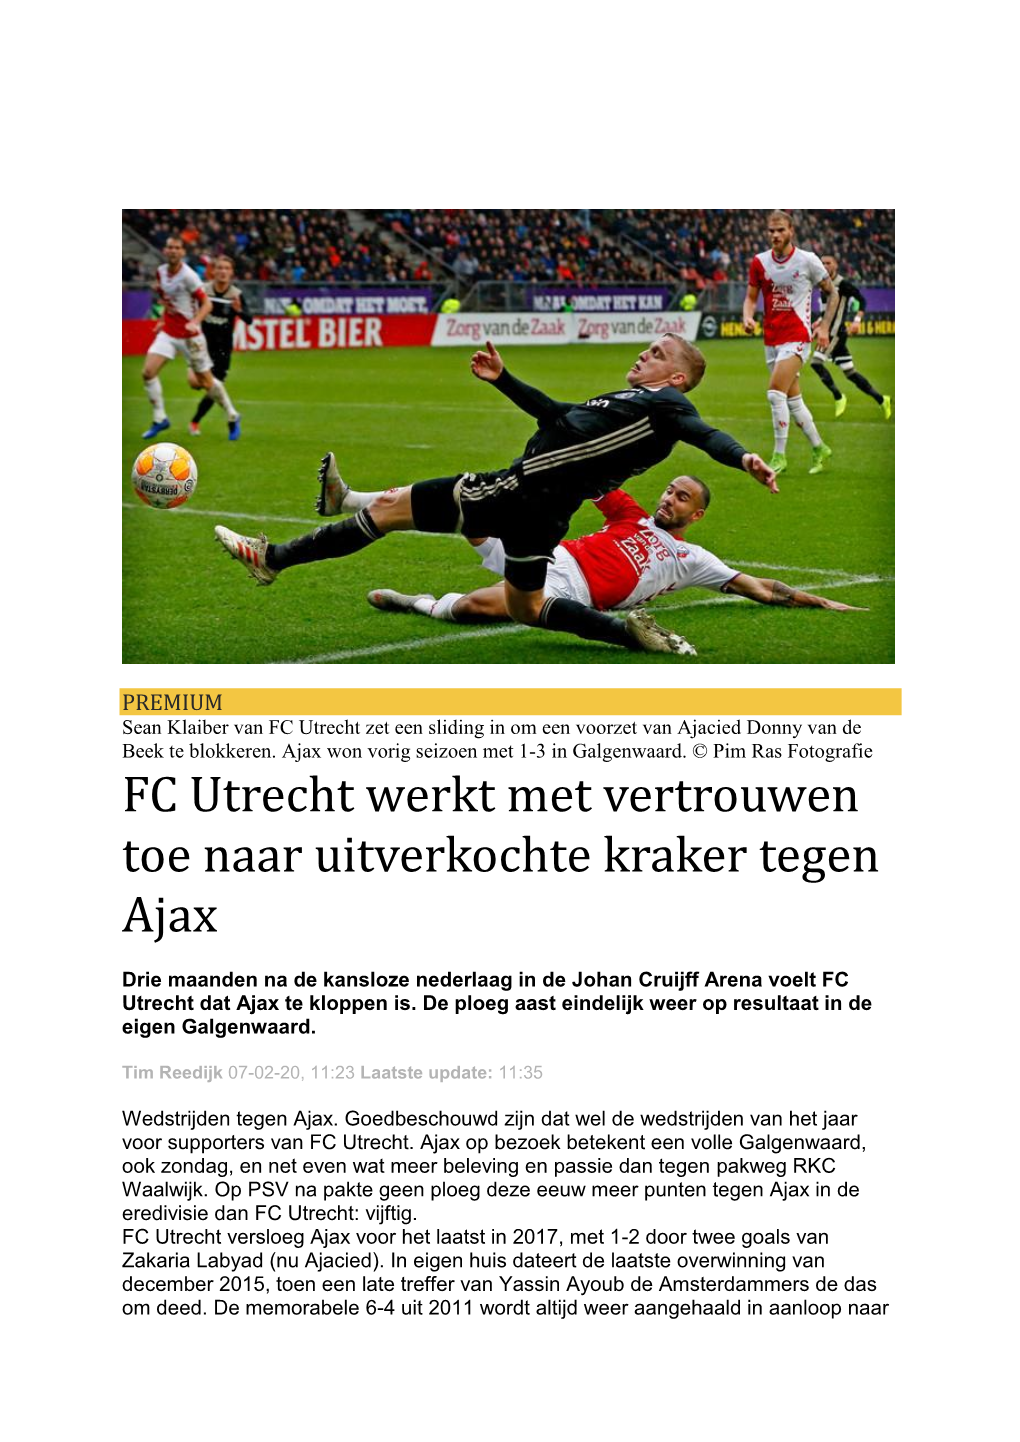 FC Utrecht Werkt Met Vertrouwen Toe Naar Uitverkochte Kraker Tegen Ajax